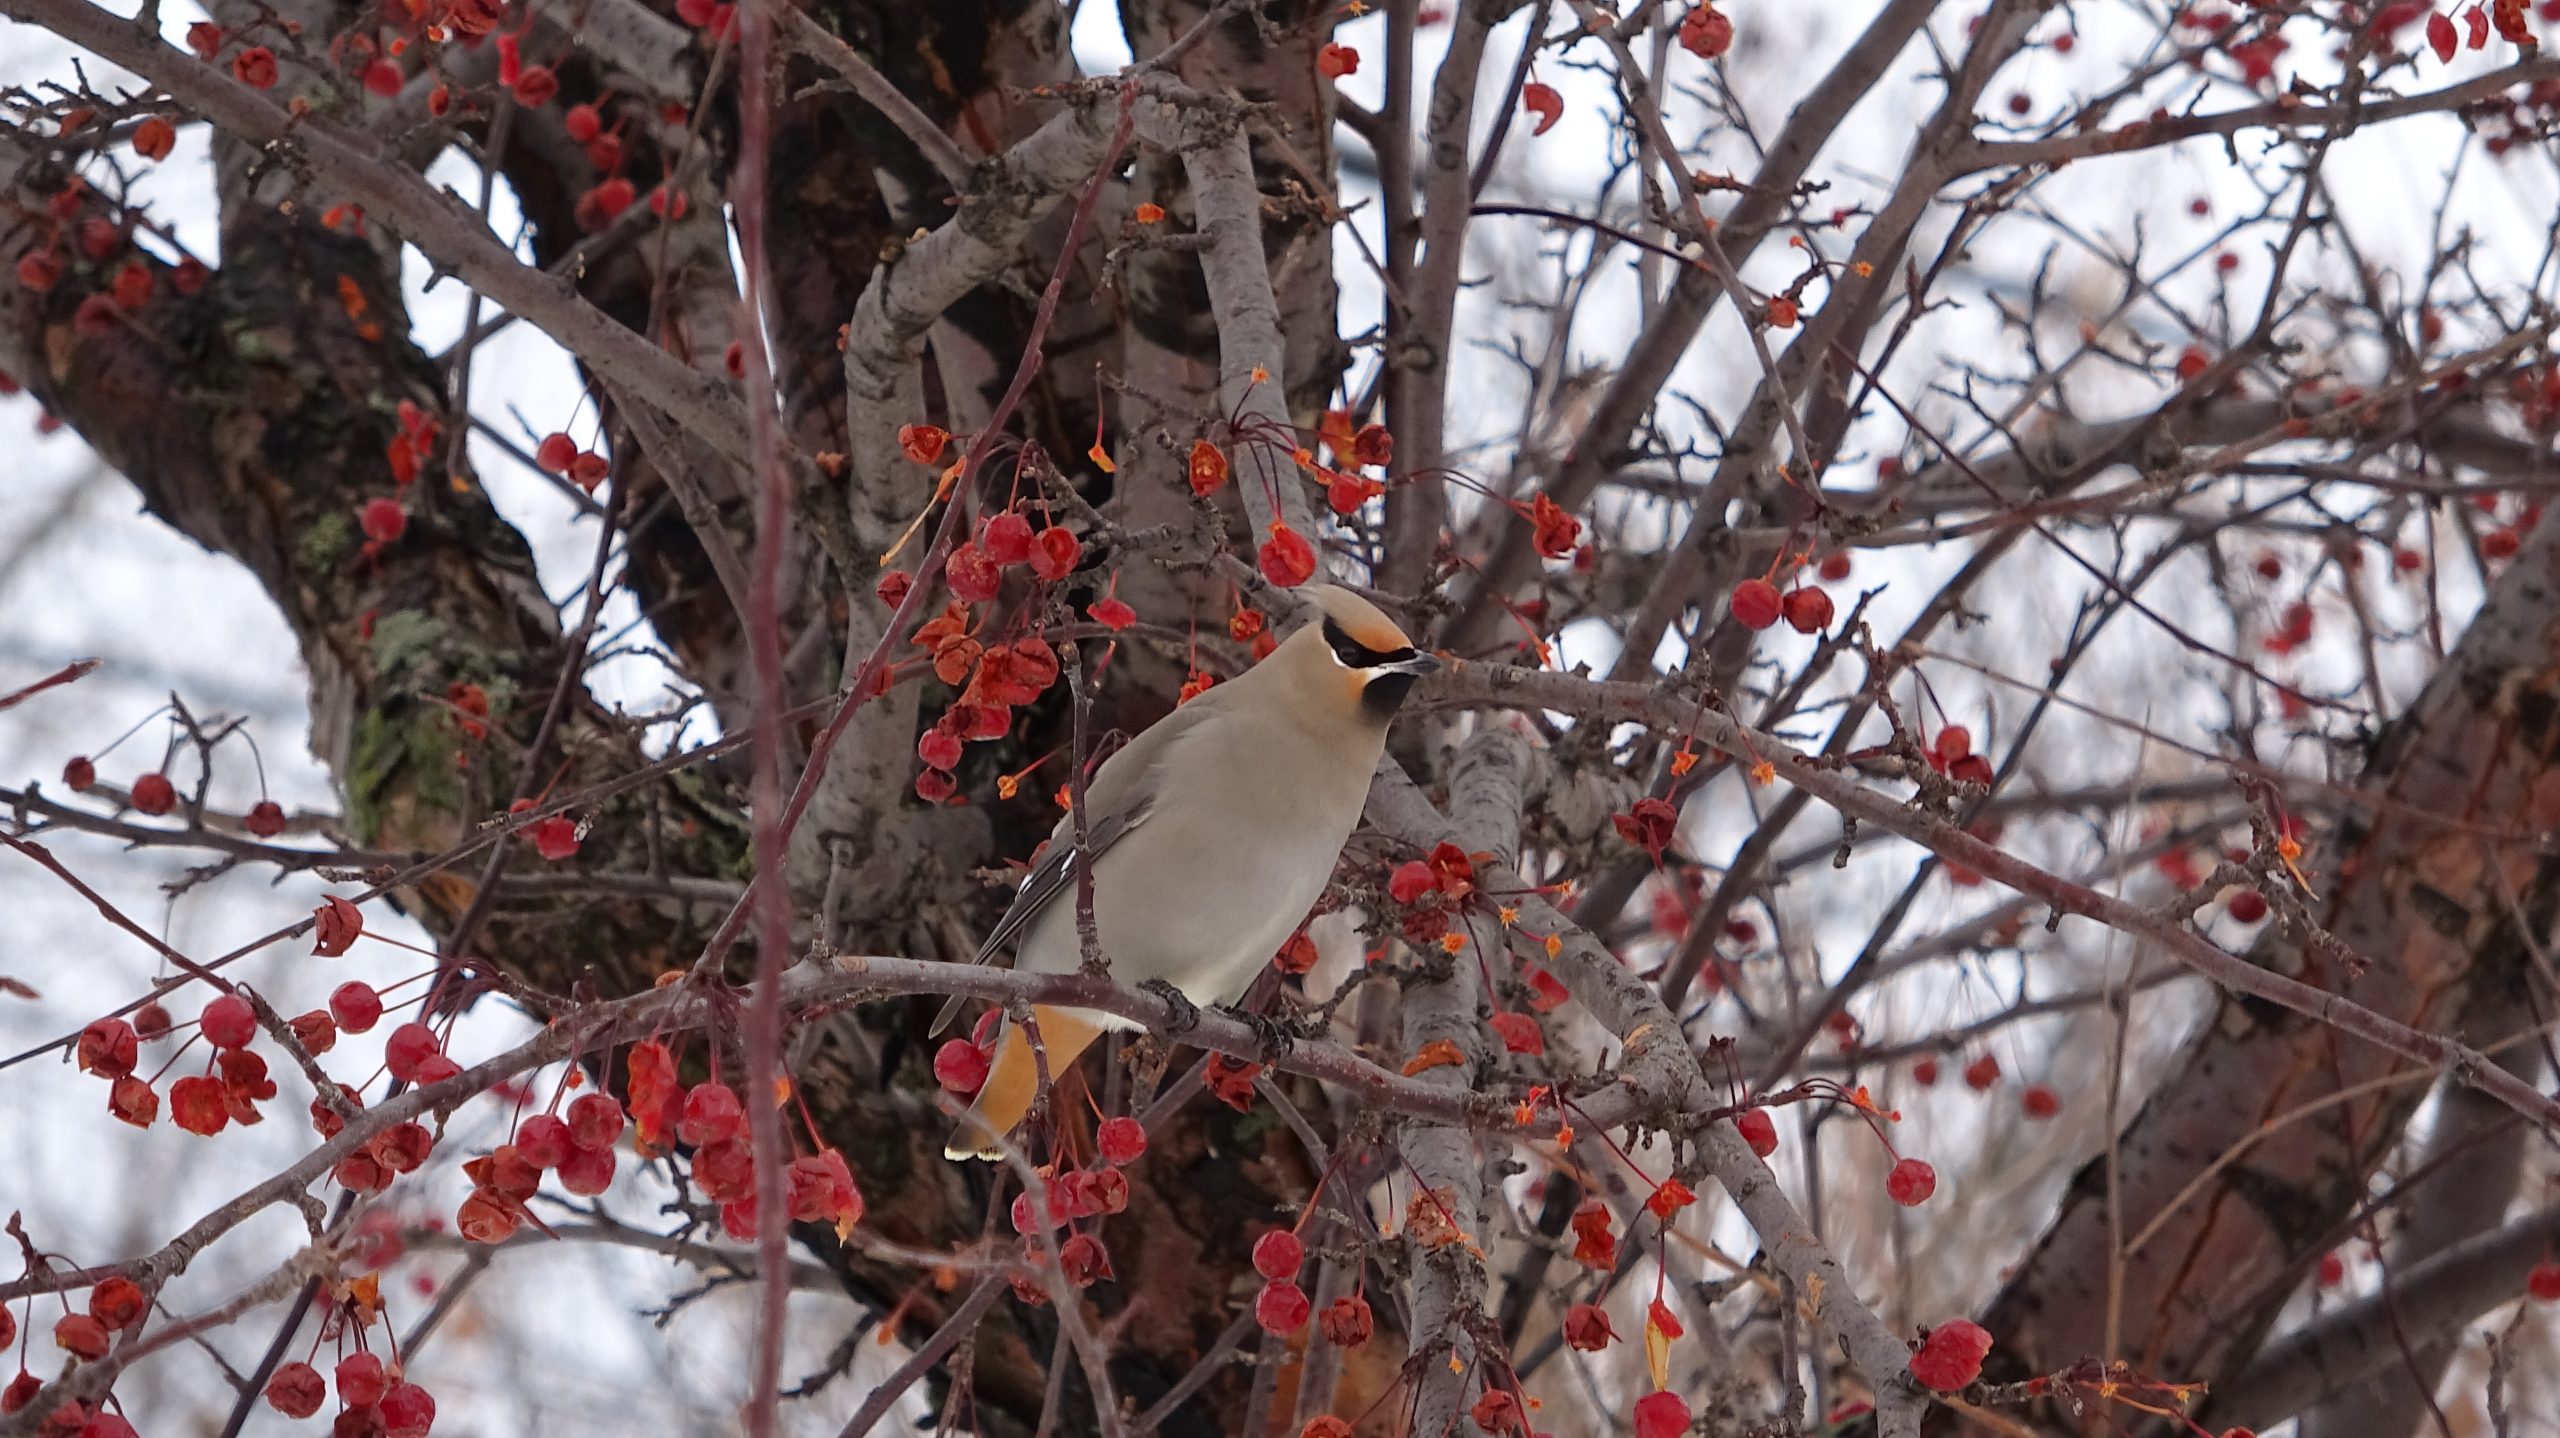 Le jaseur boréal est un visiteur hivernal très présent dans la région de Québec. On le voit ici à la réserve naturelle du Marais-Léon-Provancher, entouré de son garde-manger. Il adore les petits fruits sauvages!